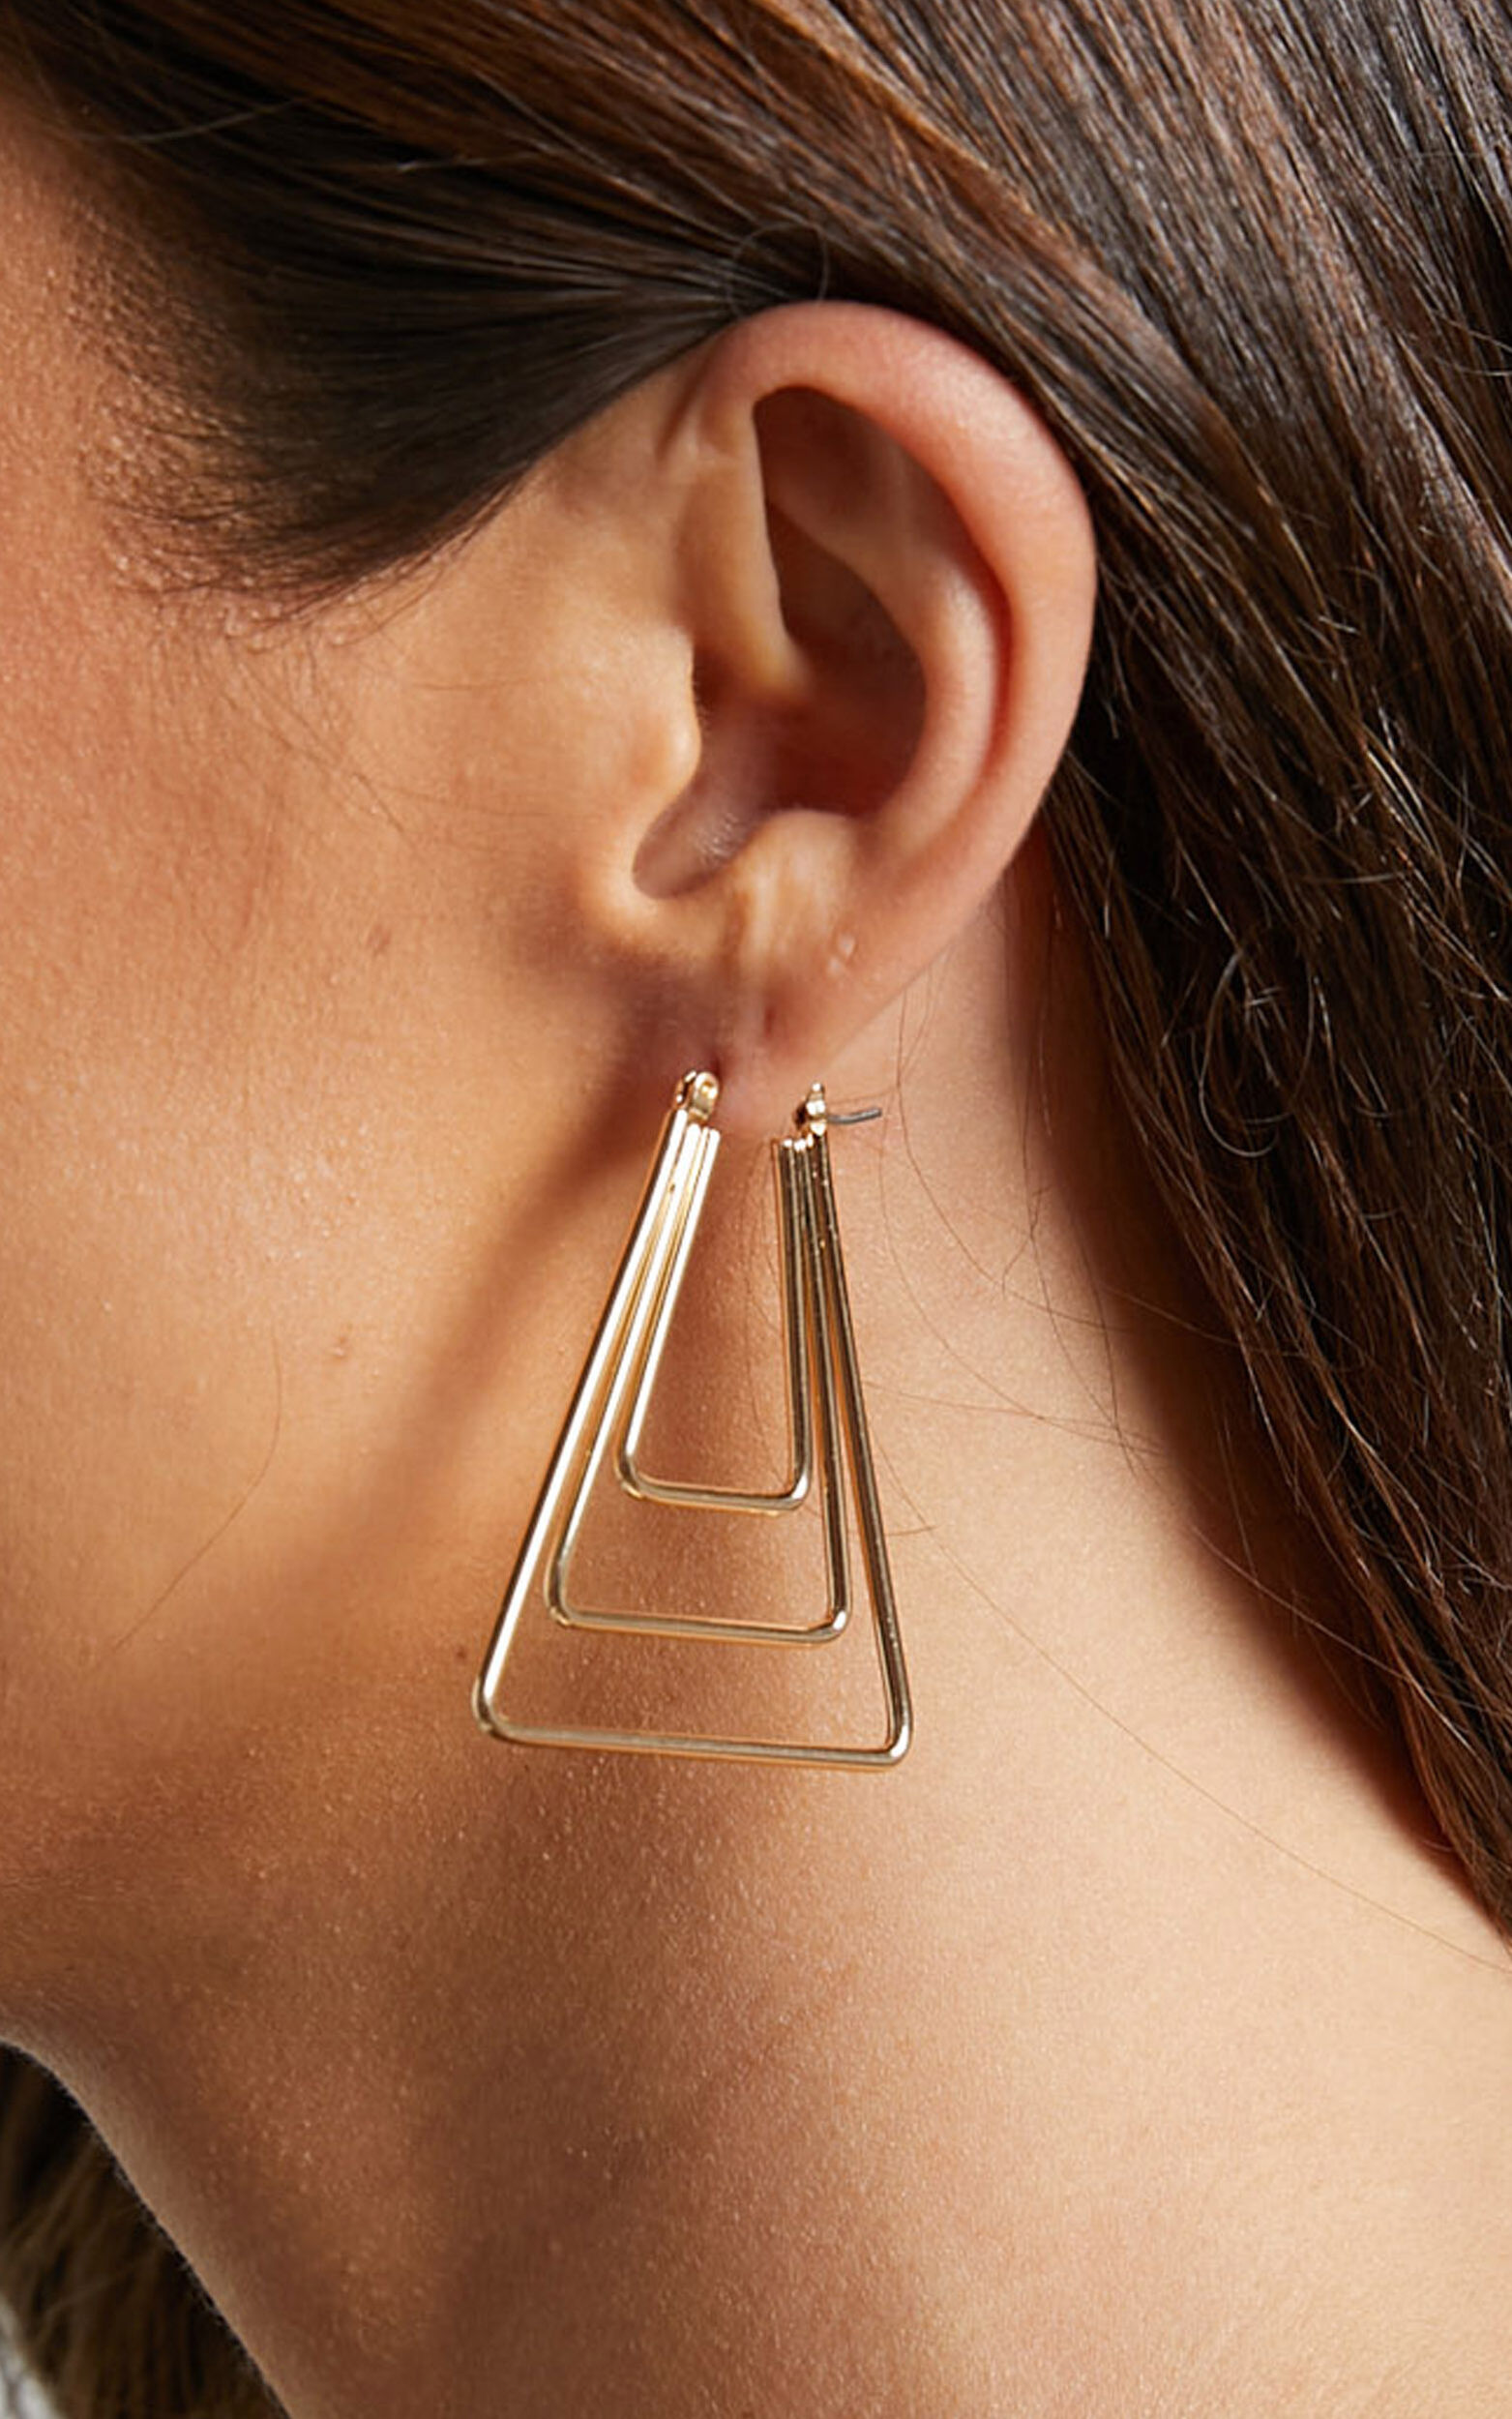 Myjela Earrings - Layered Triangle Hoop Earrings in Gold - NoSize, GLD1